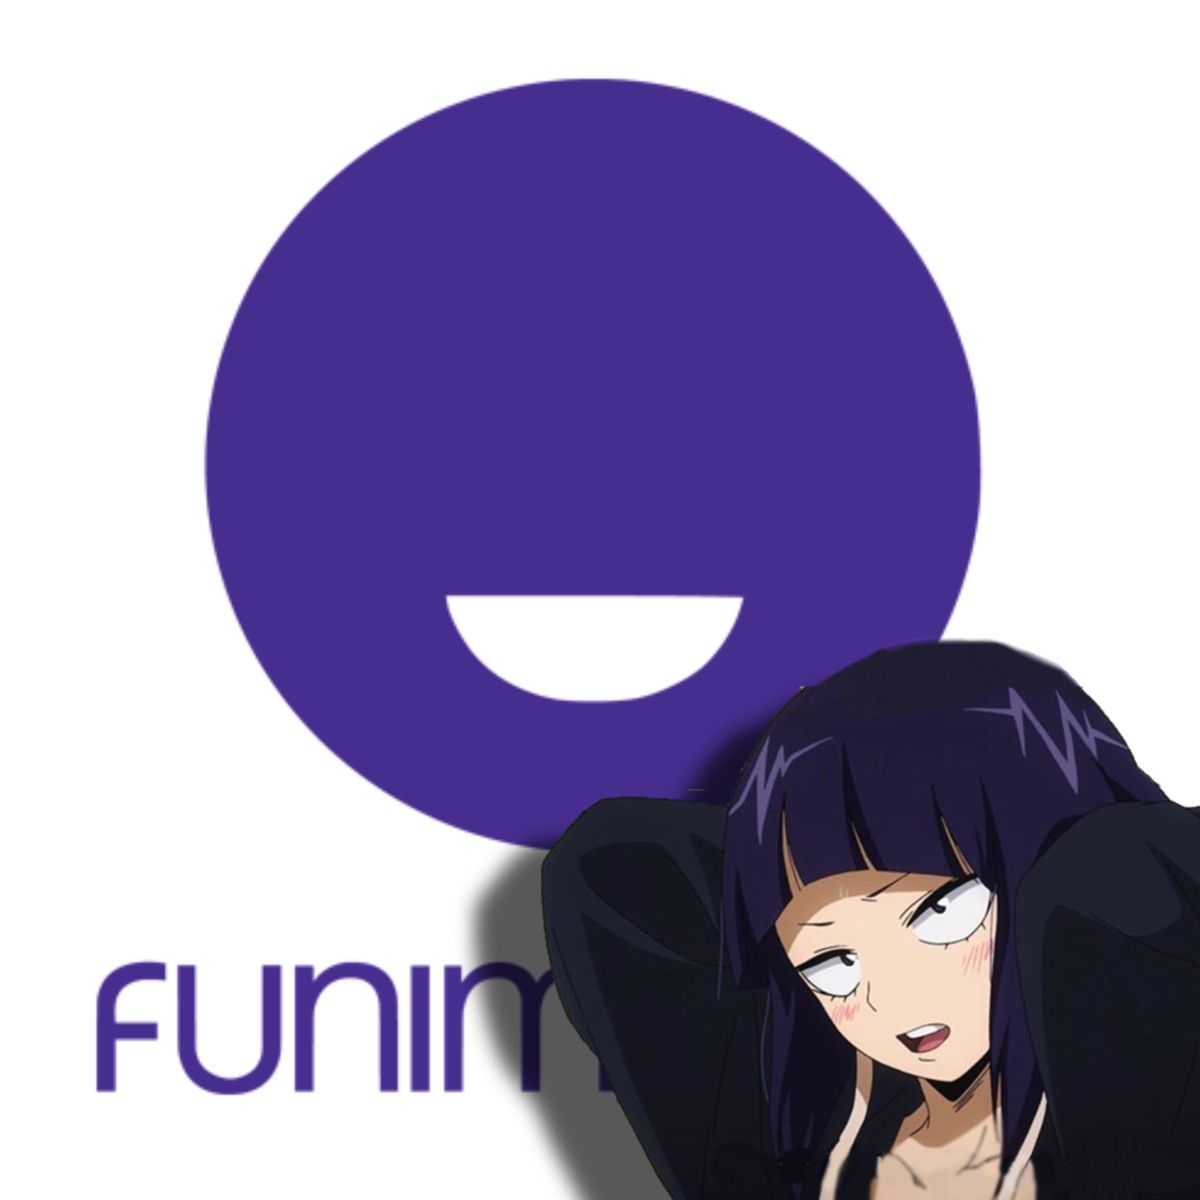 funimation icon, kyoka jirou. Ios app icon, App anime, Cute app